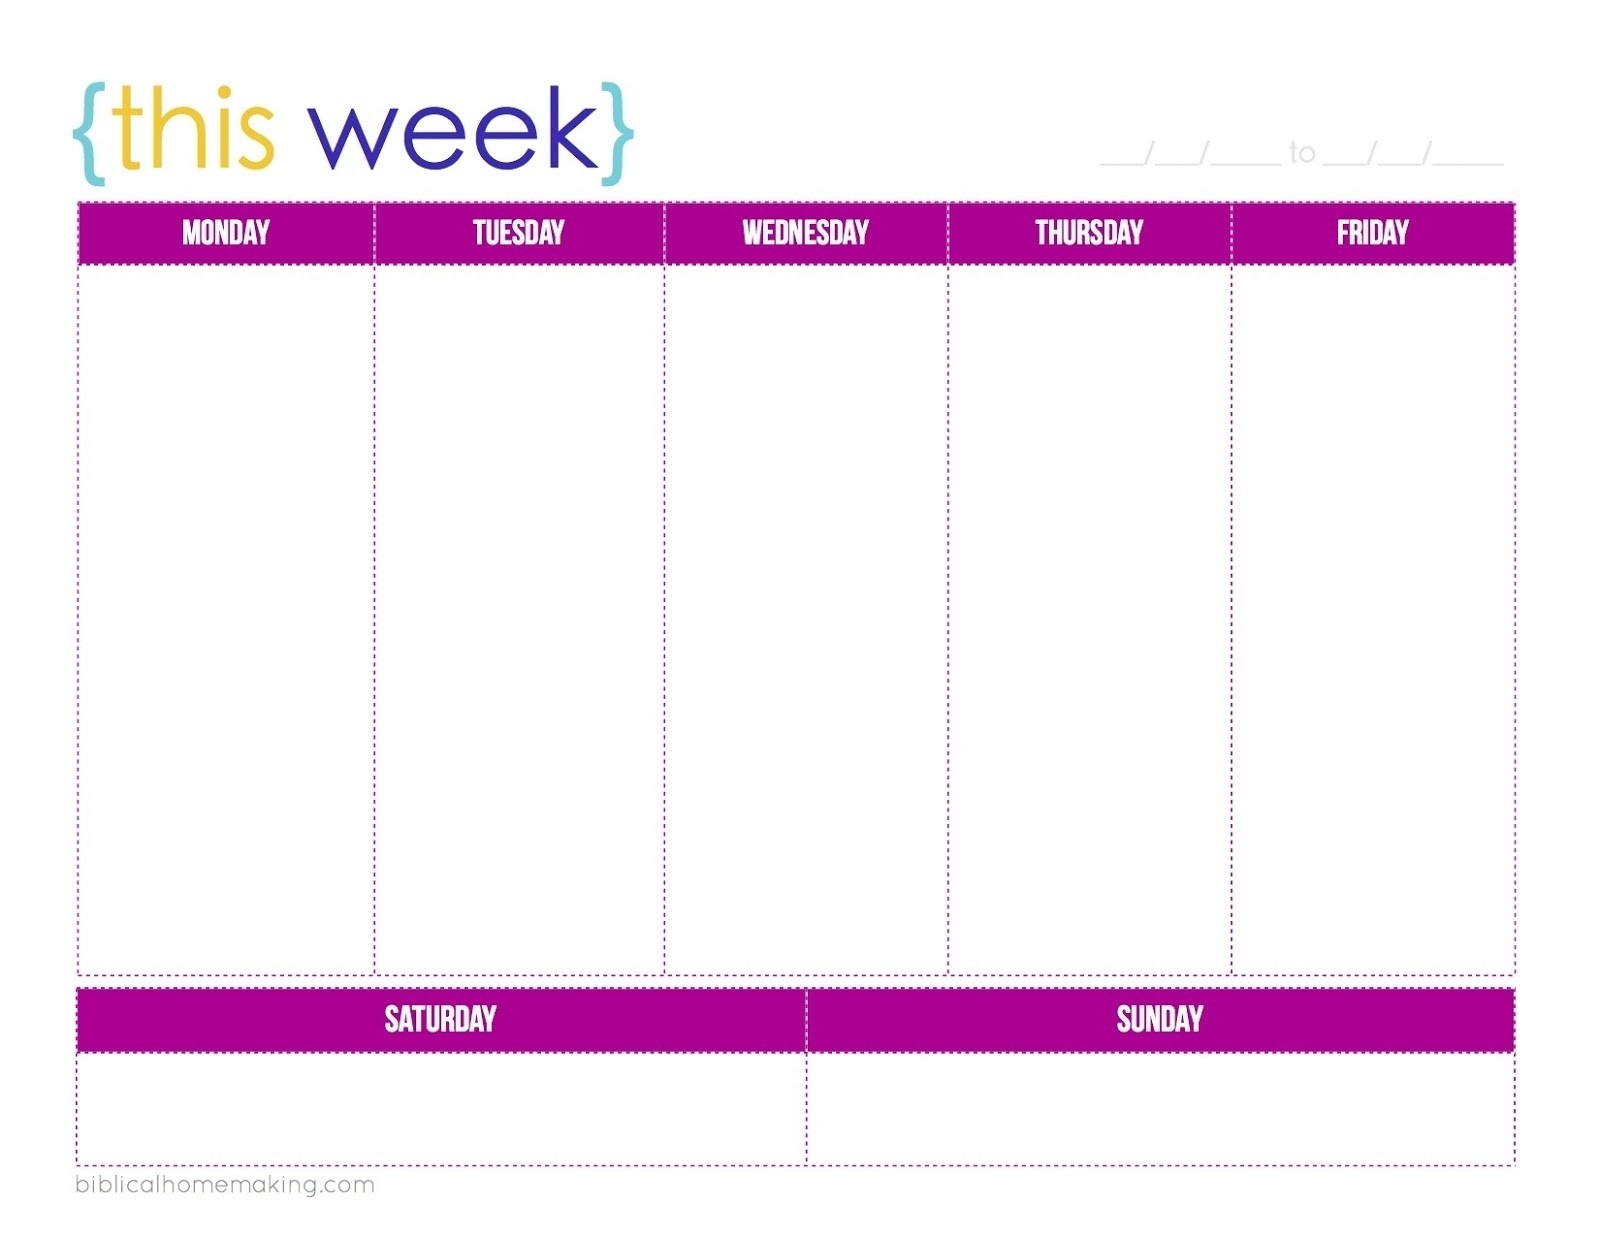 Schedule Template Printable One Week Calendar E2 80 93 Celo inside One Week Calendar Template Printable